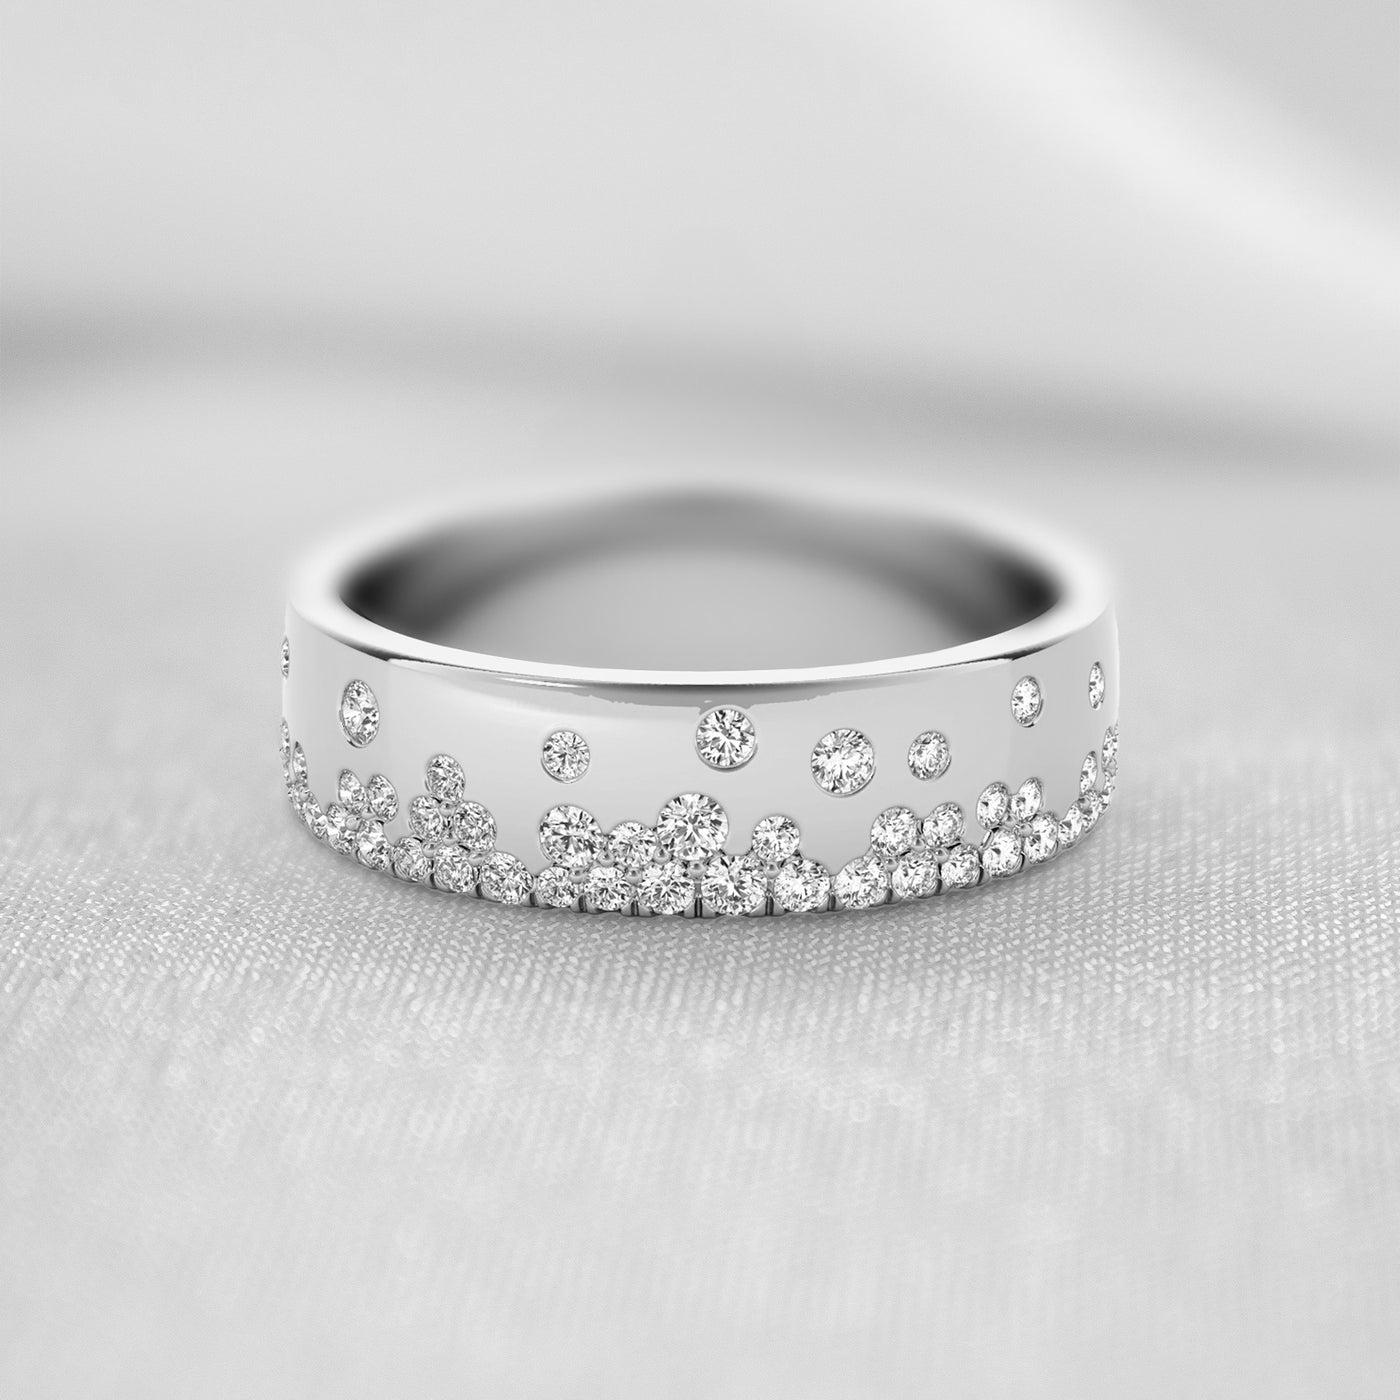 The Jordan Scatter Diamond Wedding Ring | Lisa Robin#color_18k-white-gold